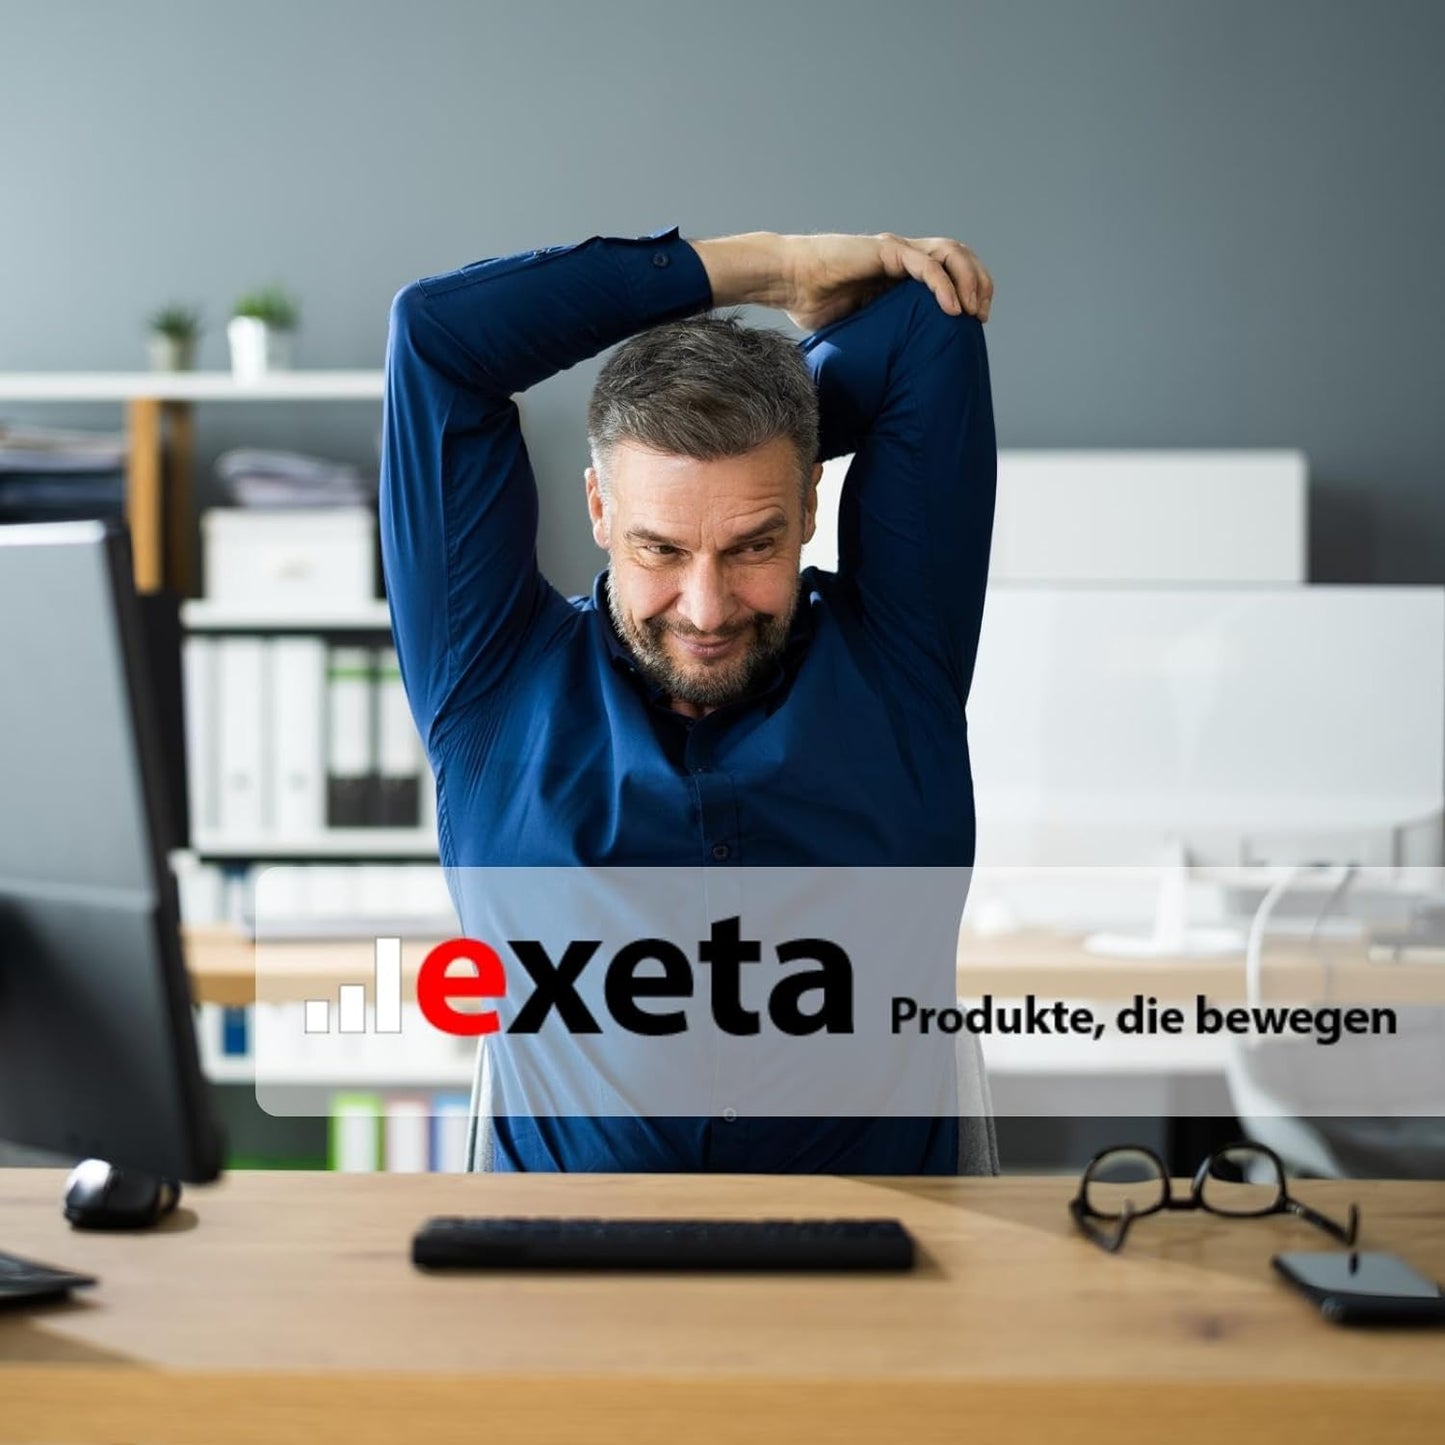 exeta - Produkte, die bewegen